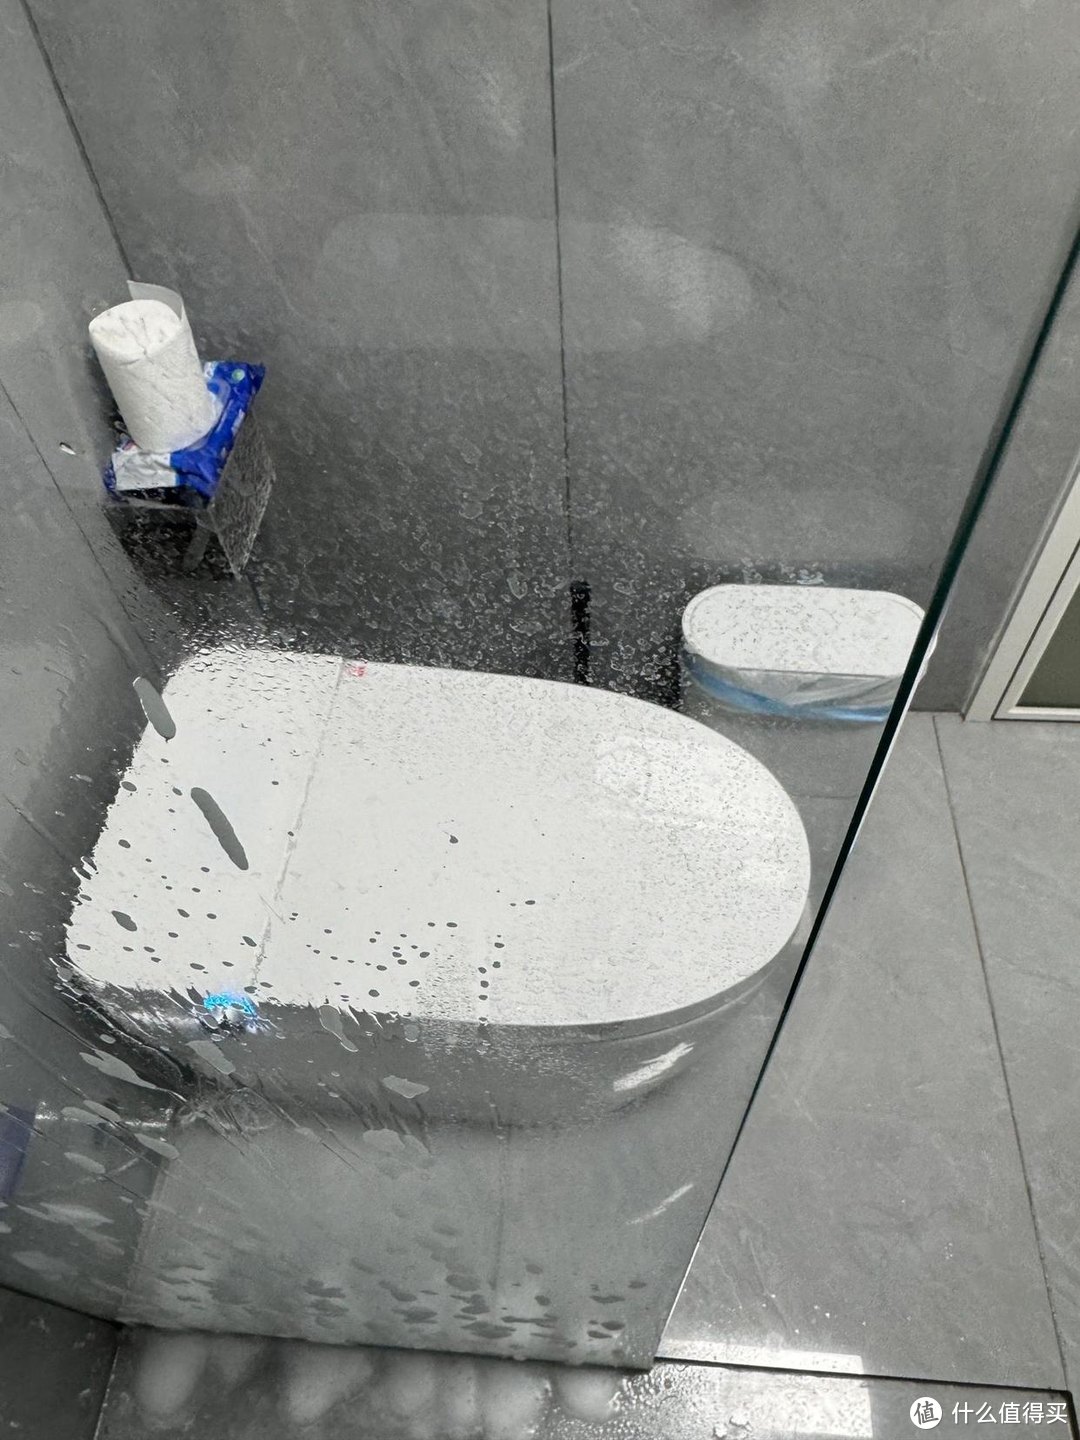 卫生间别再用玻璃做干湿分离了，现在流行这样设计，省钱又实用